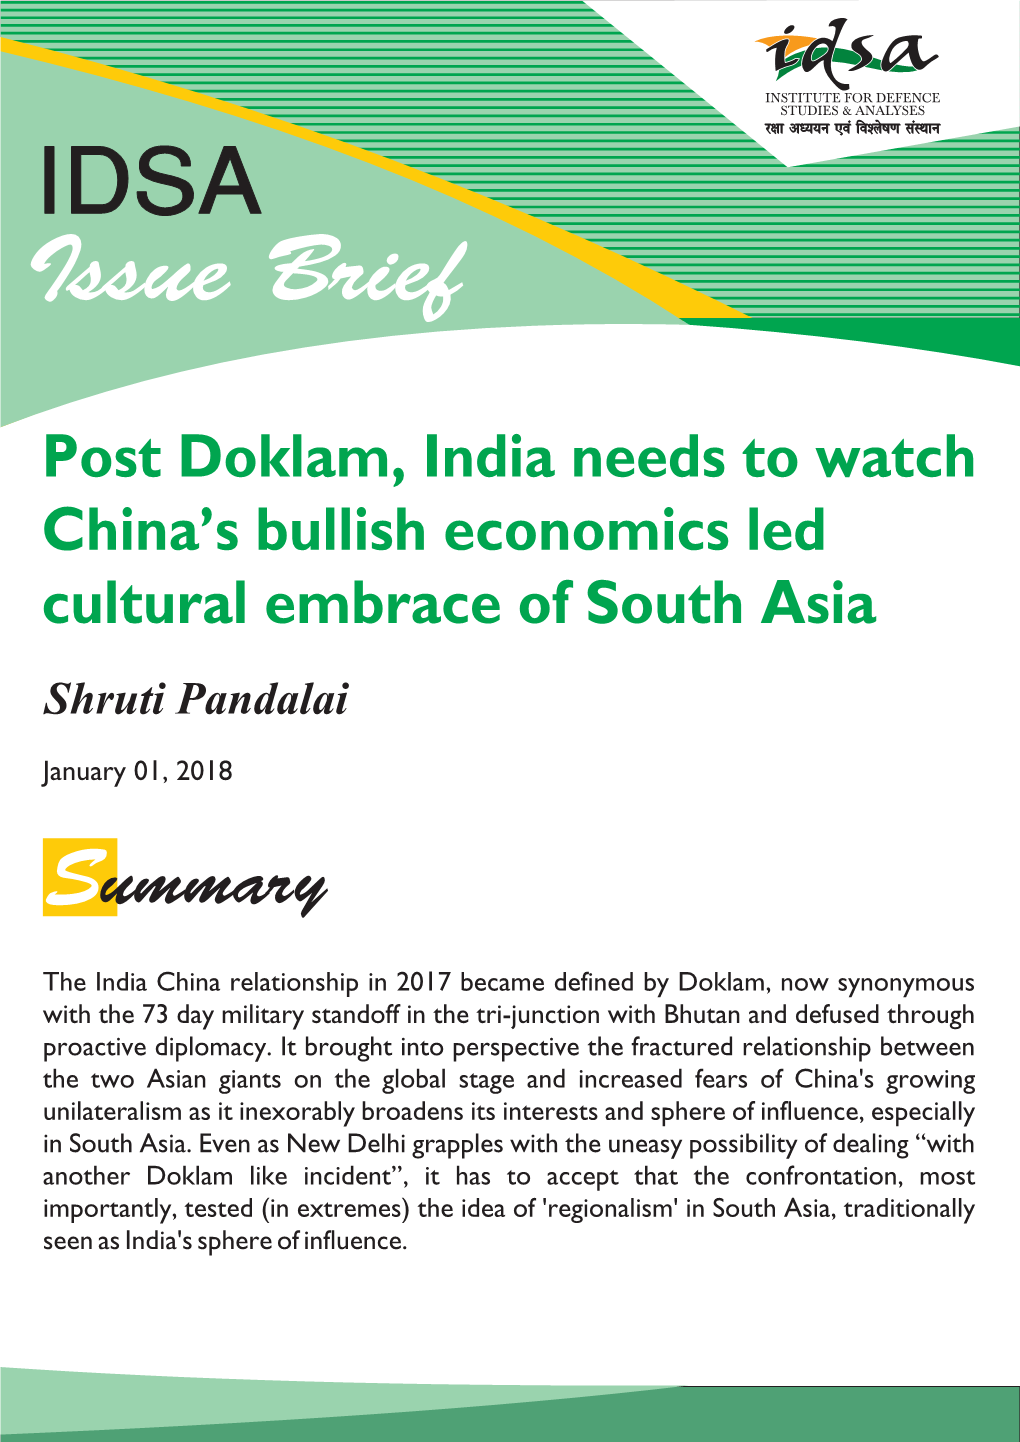 Post Doklam, India Needs to Watch China's Bullish Economics Led